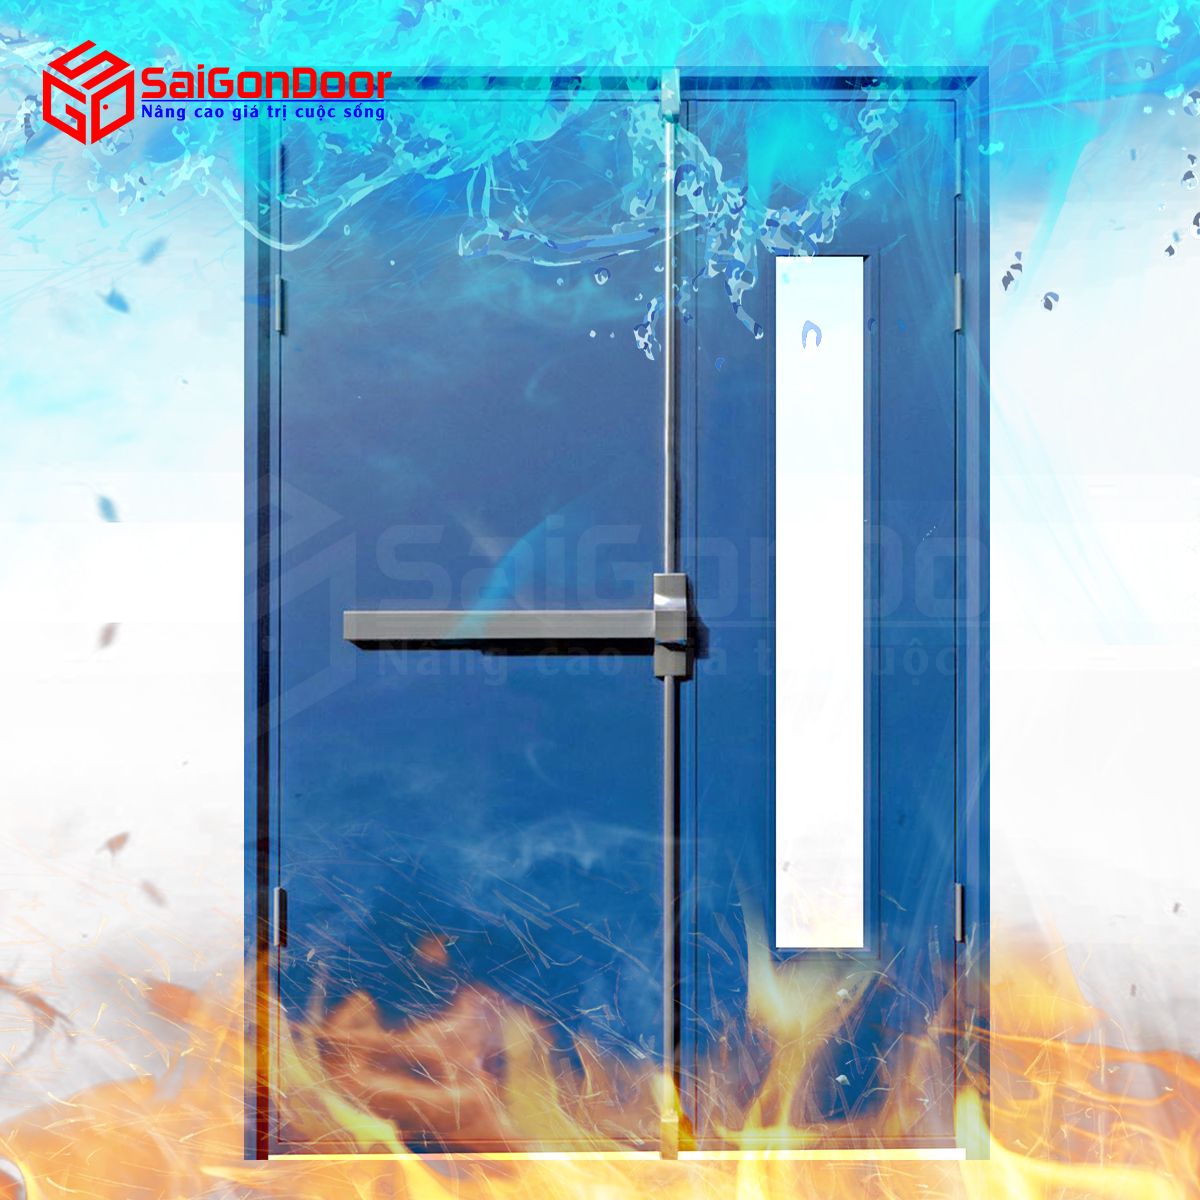 Khả năng chống cháy trong một khoang thời gian nhất định là yêu cầu cơ bản của cửa thép chống cháy